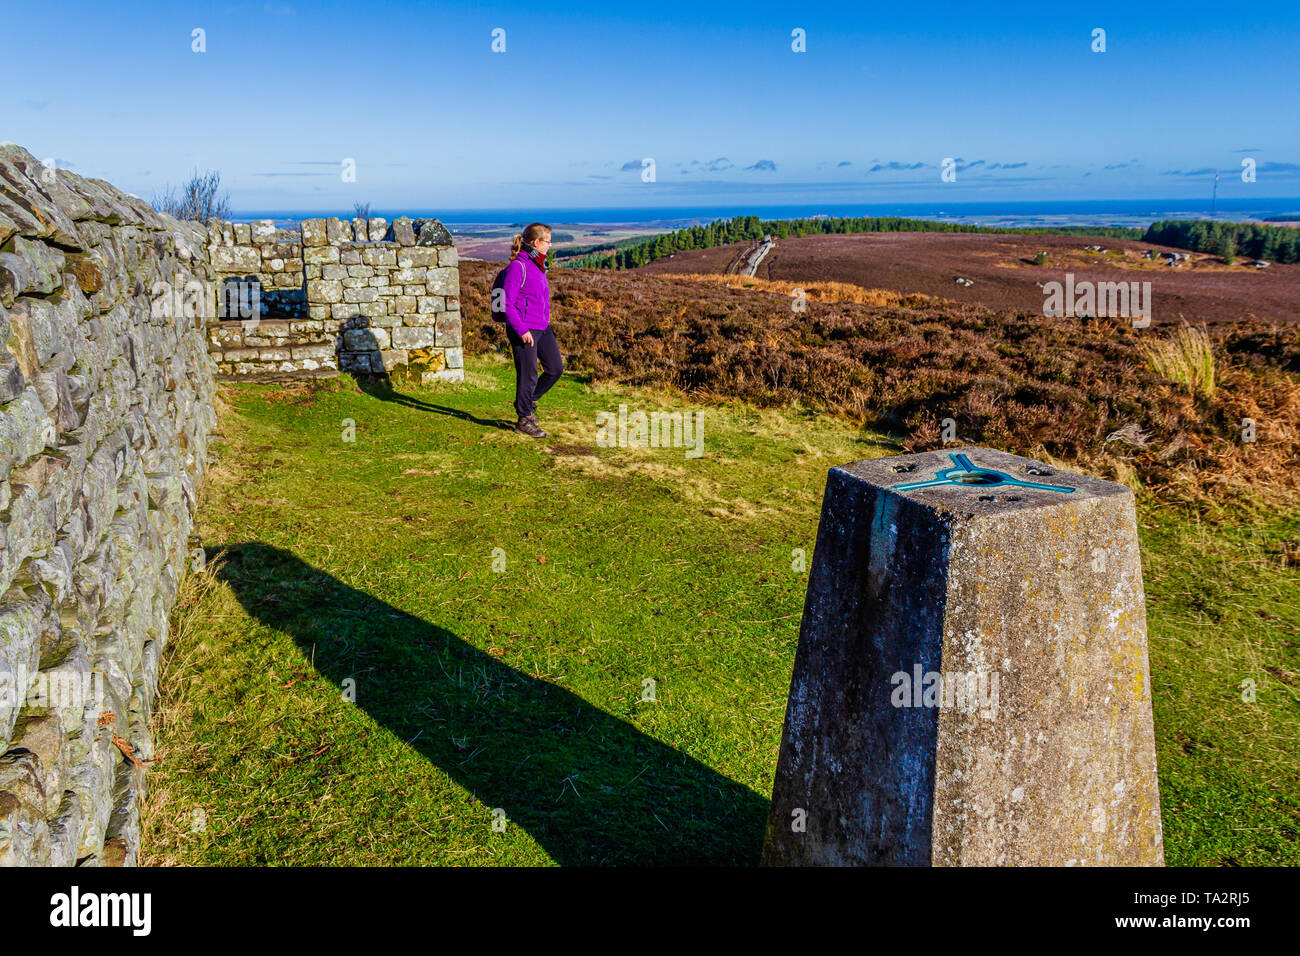 Le secoueur trig point sur le sommet de la colline, le site Ros ros d'âge de fer de château fort. Près de Chillingham, Northumberland, Angleterre. Novembre 2018. Banque D'Images